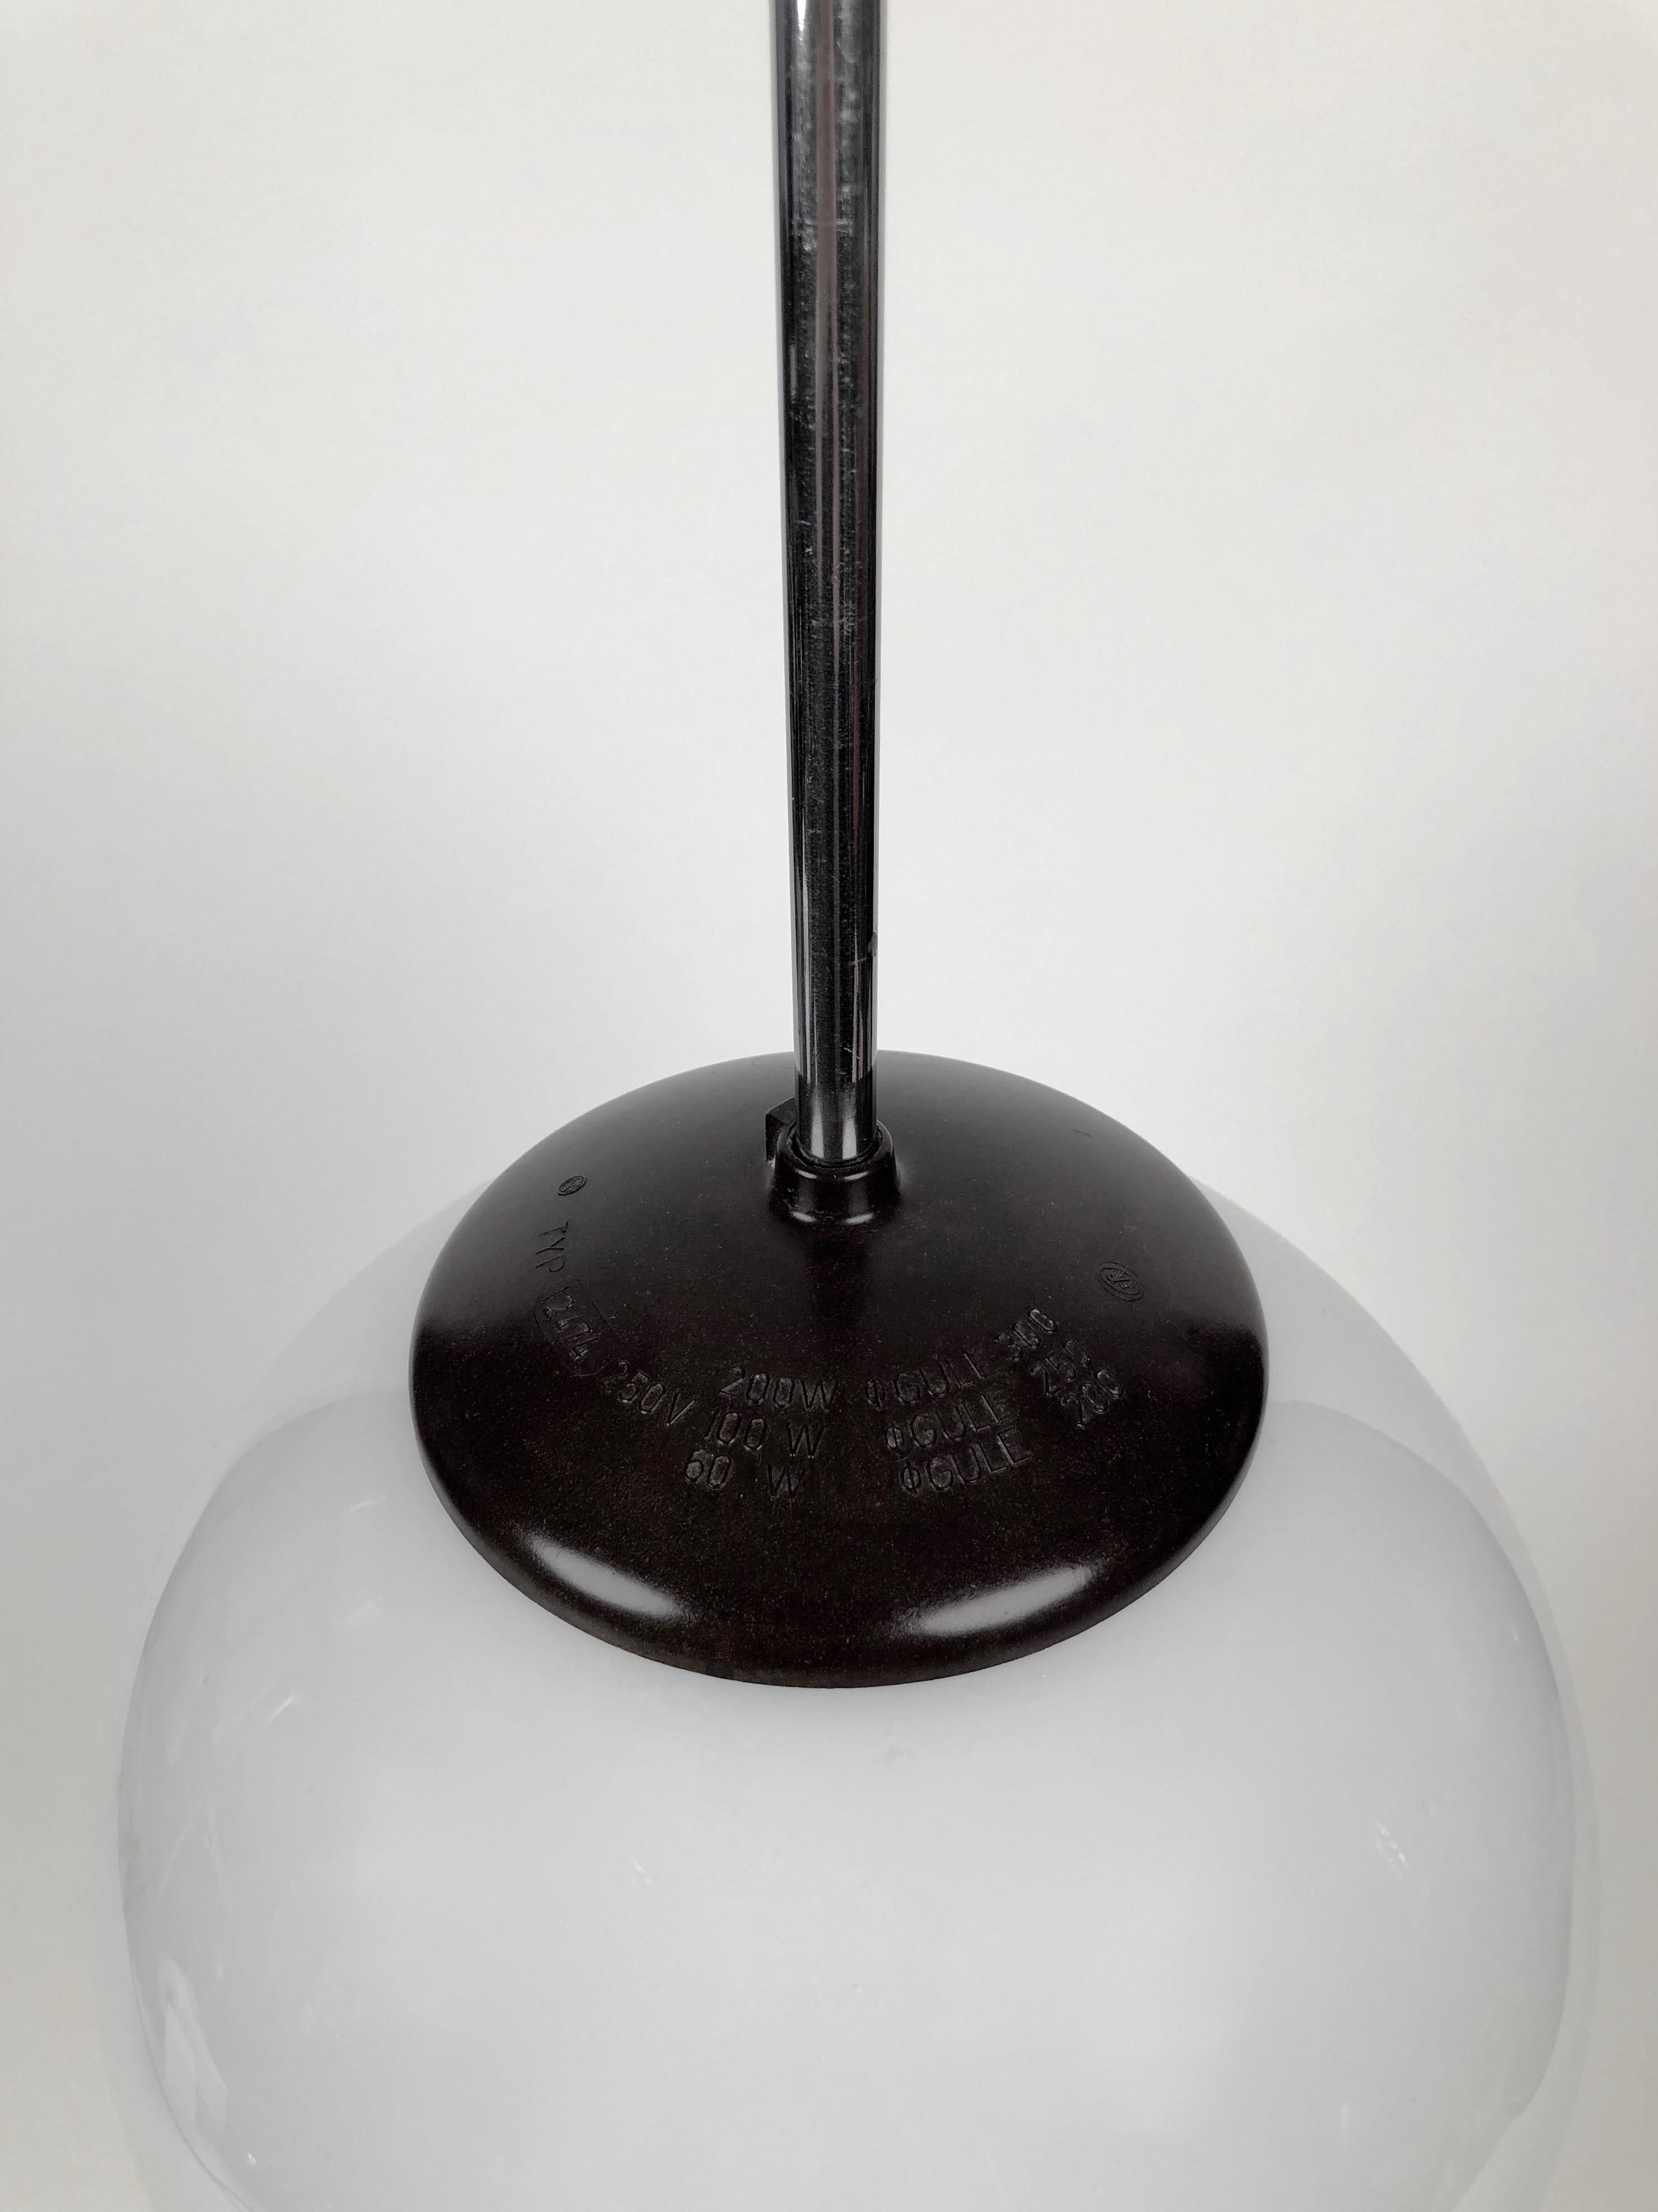 Lampe à suspension classique des années 1930 avec globe rond en verre opalin. Le design a des influences Bauhaus. La Bakélite est en très bon état.